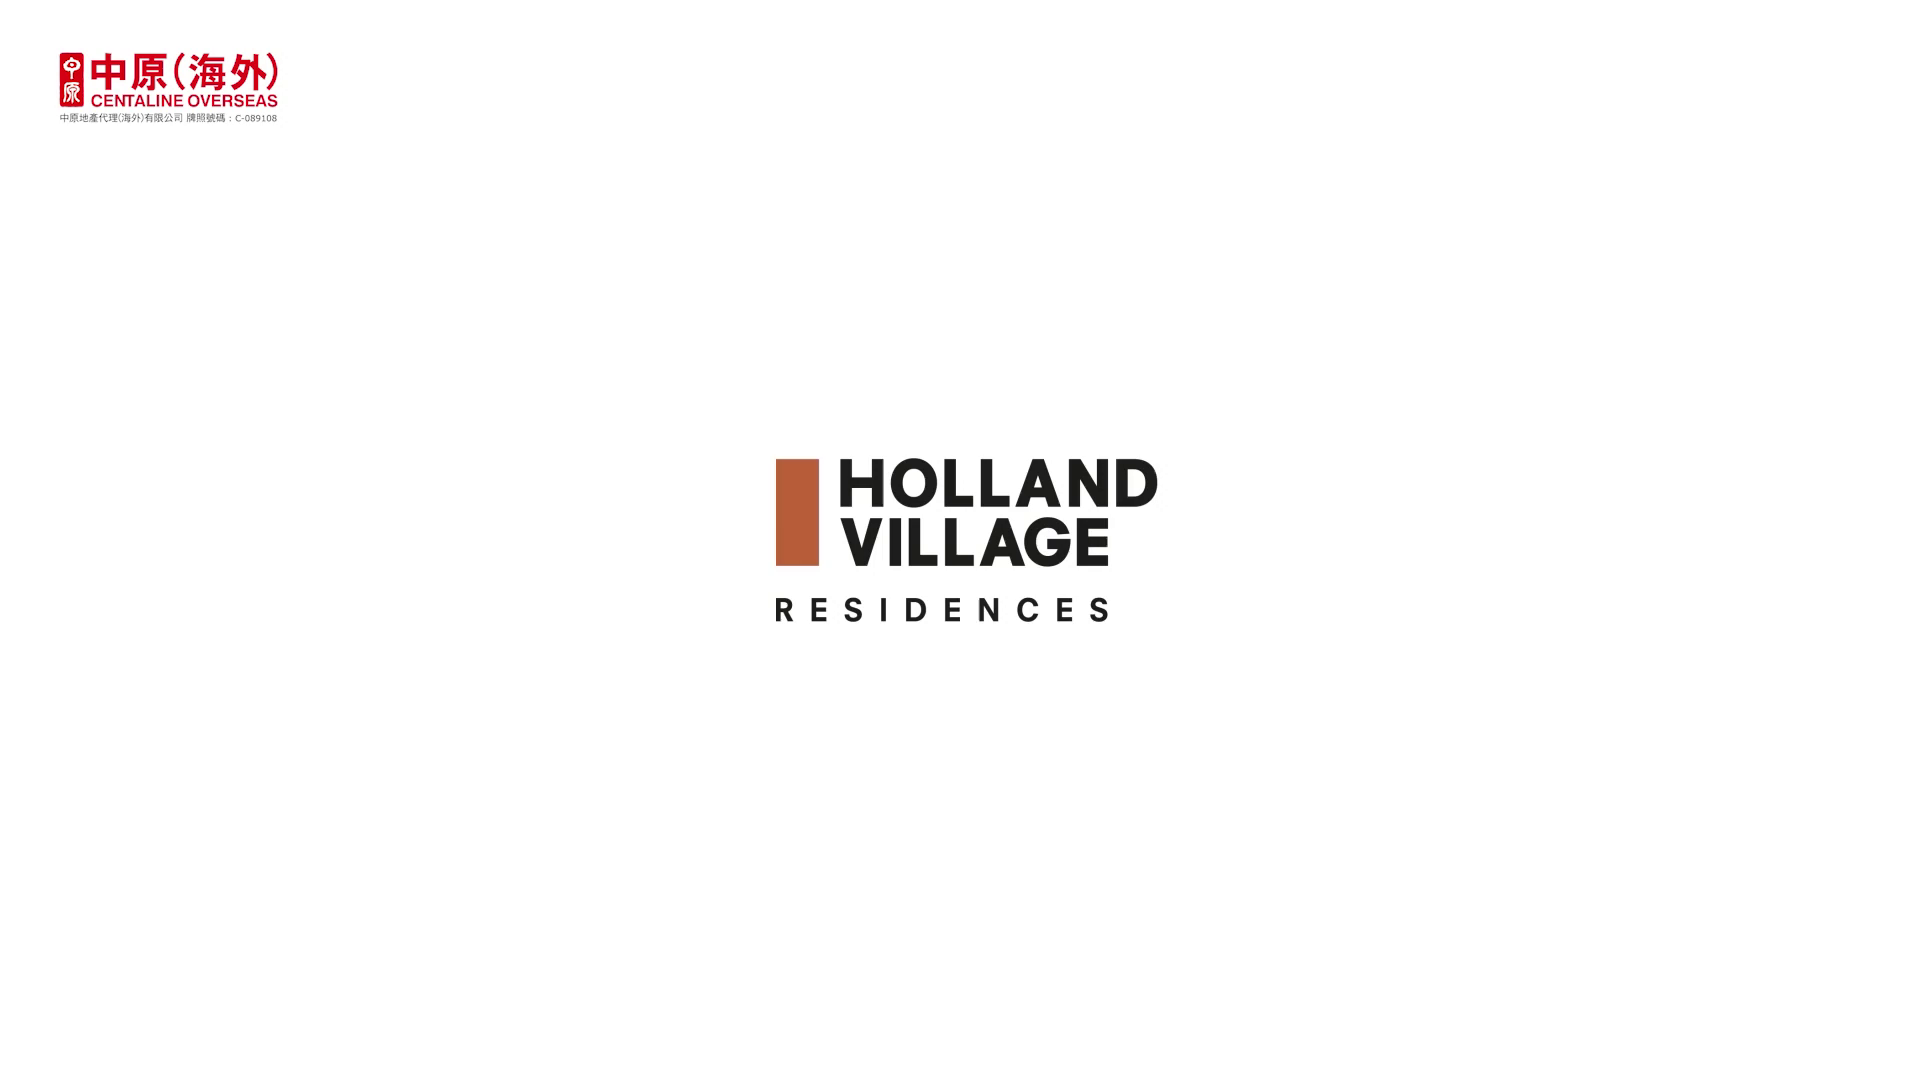 海外尋寶 新加坡篇 One Holland Village Residences 荷蘭村一號住宅項目 中原地產代理 (海外)